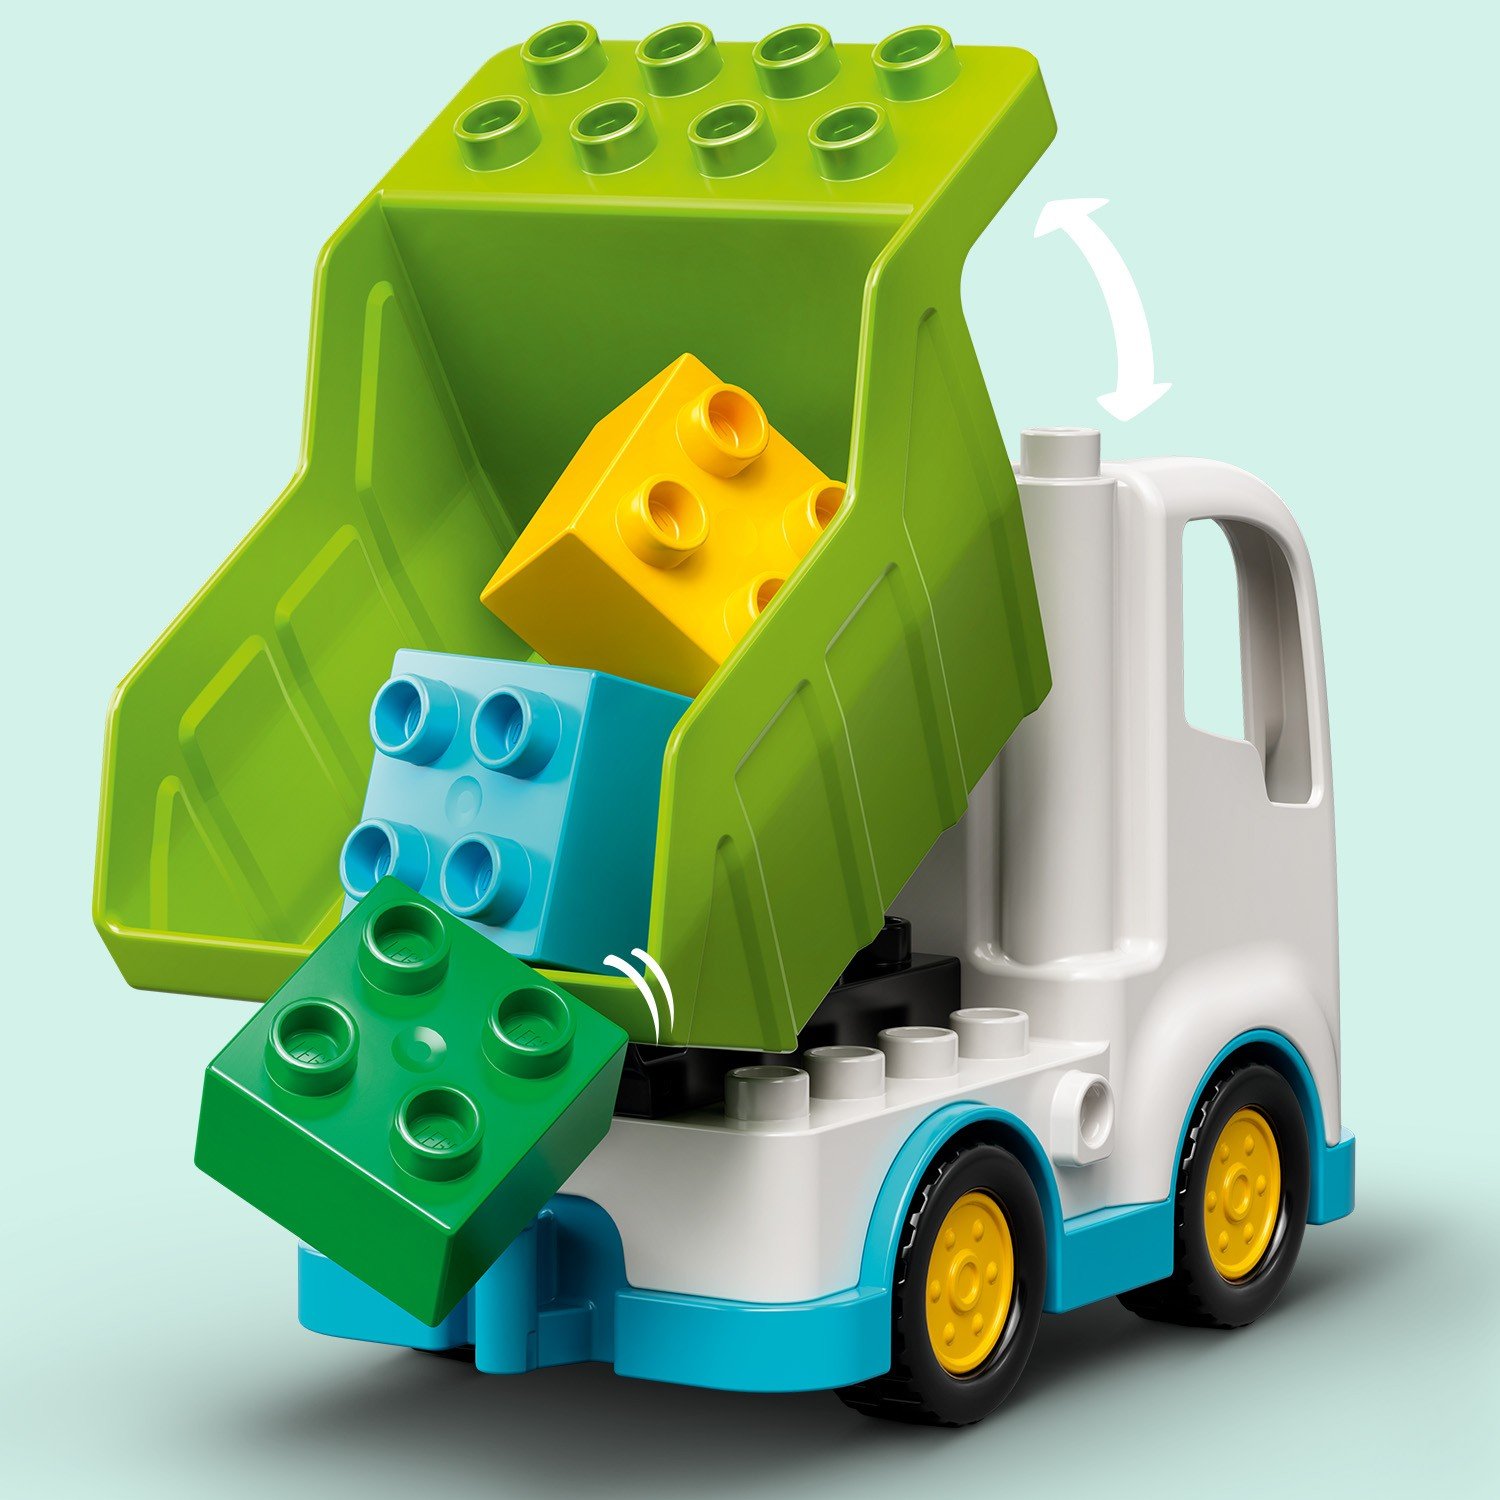 Конструктор LEGO Duplo Town 10945 Мусоровоз и контейнеры для раздельного сбора мусора